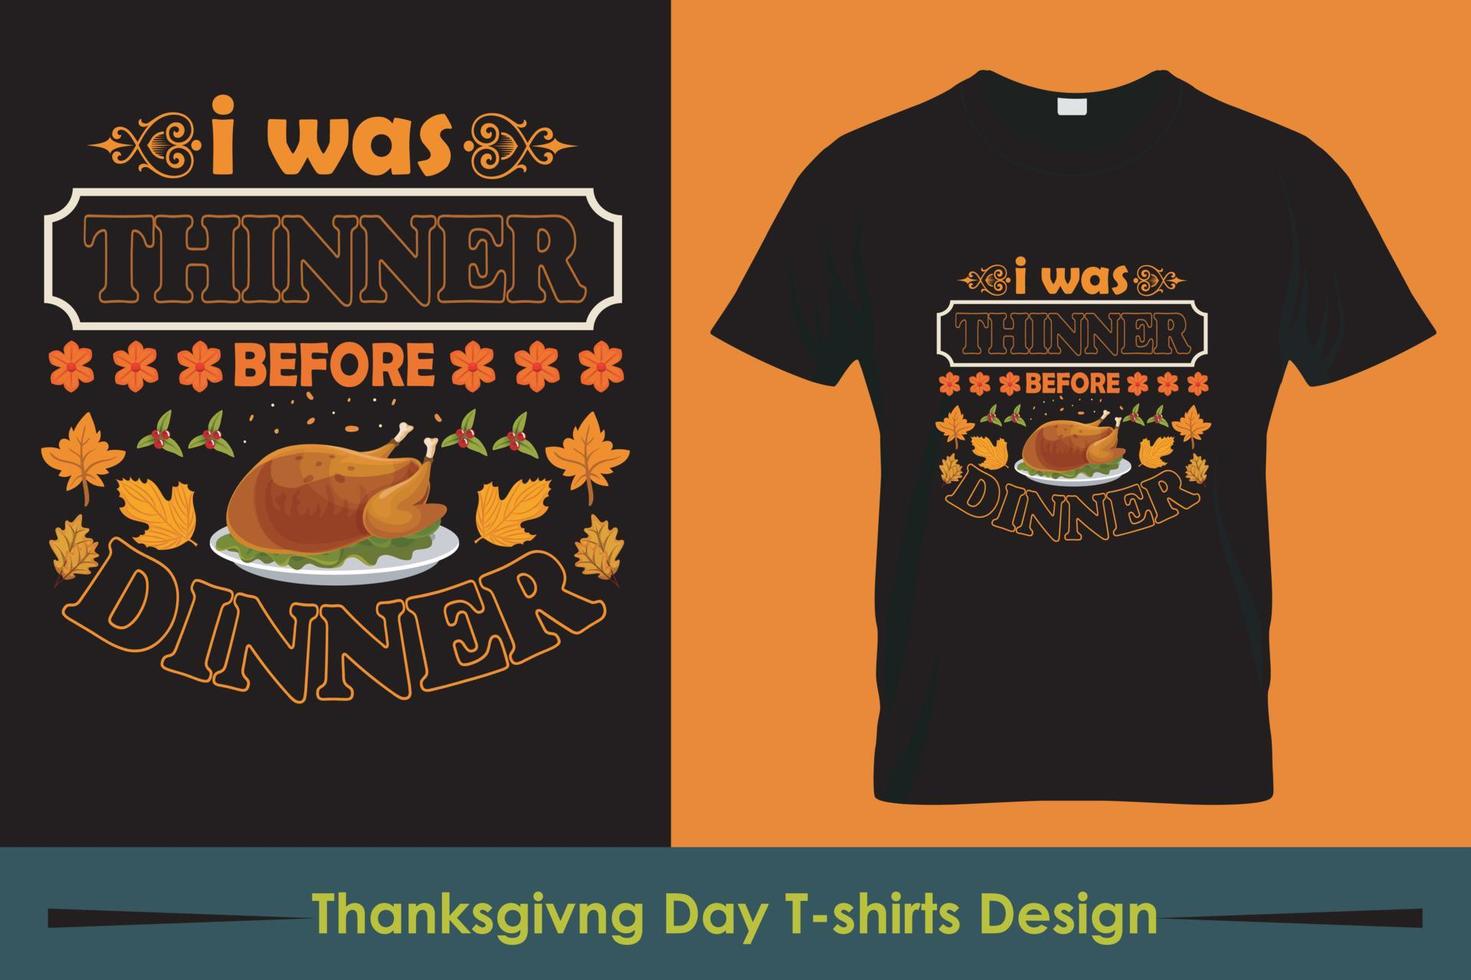 conception de t-shirt de thanksgiving, slogan de t-shirt et conception de vêtements, typographie, impression, illustration vectorielle vecteur gratuit